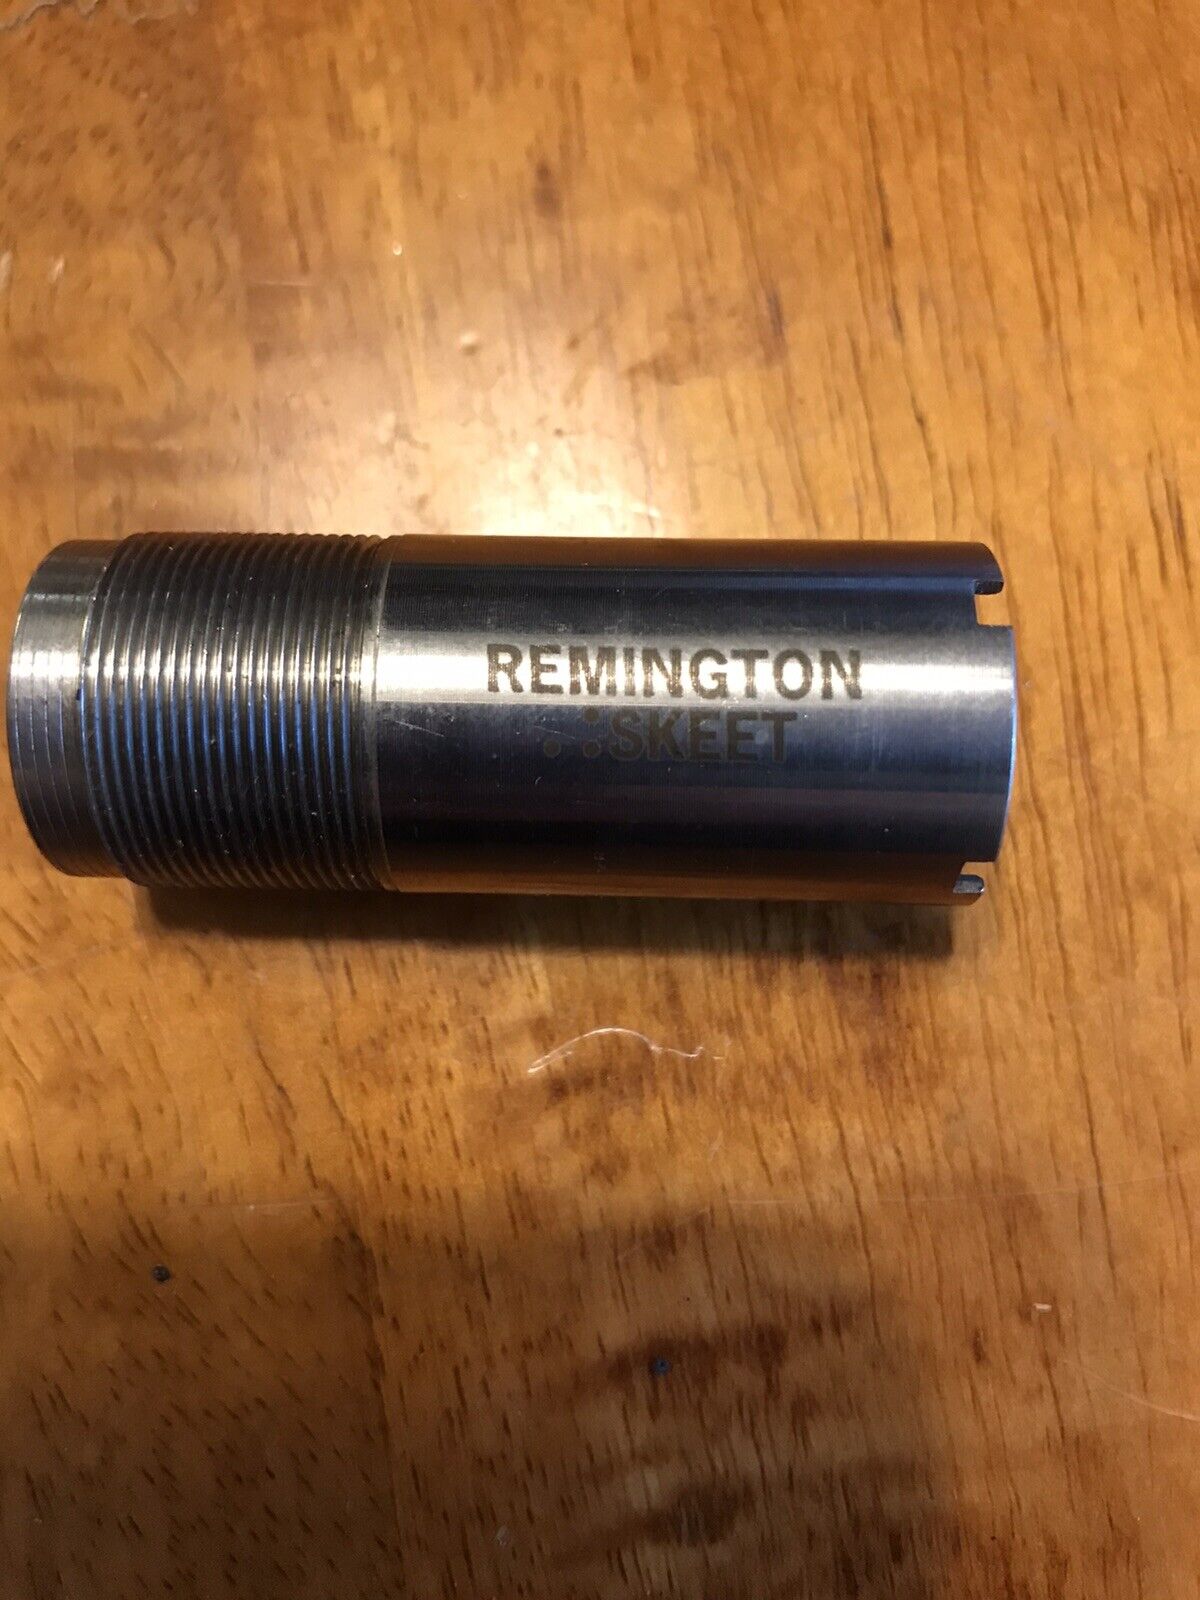 Remington Skeet 12 Gauge Choke Flush Factory